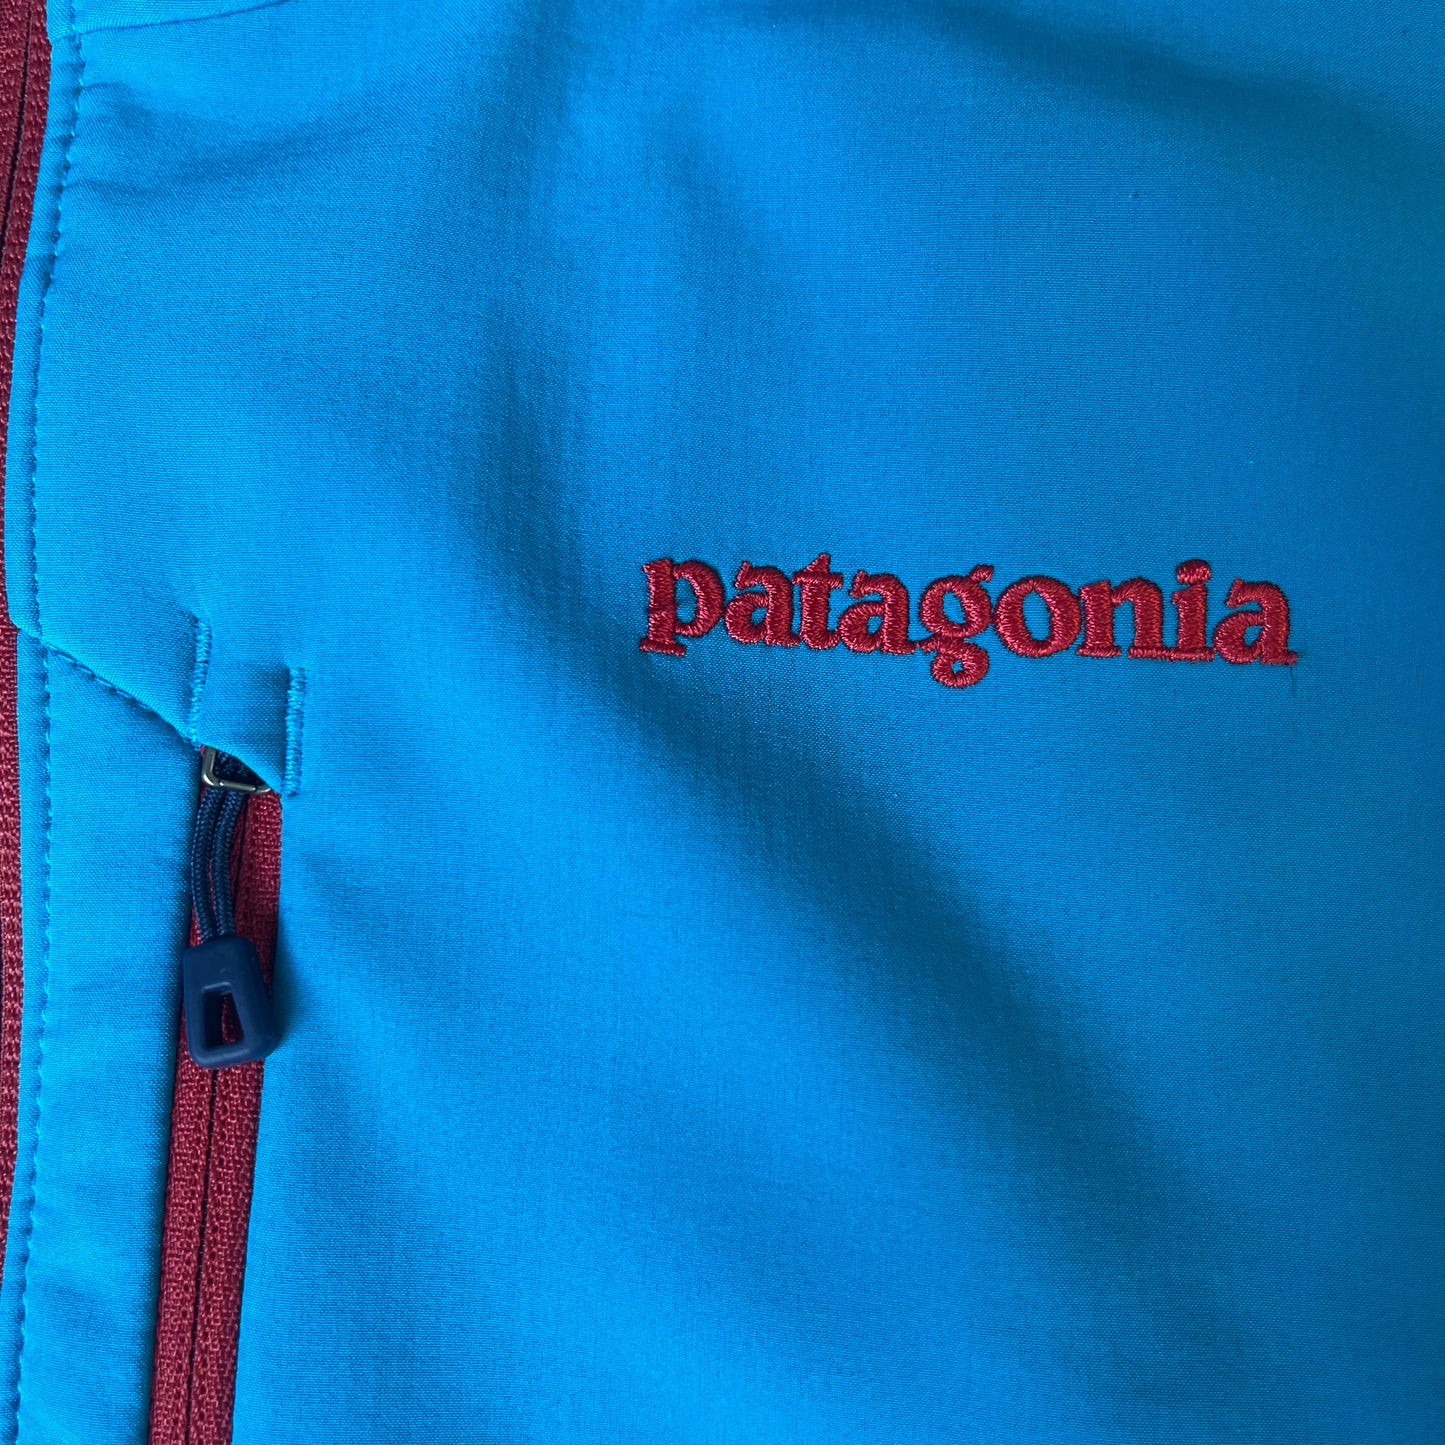 Jacke von Patagonia (M Herren) Polartec Windblock blau